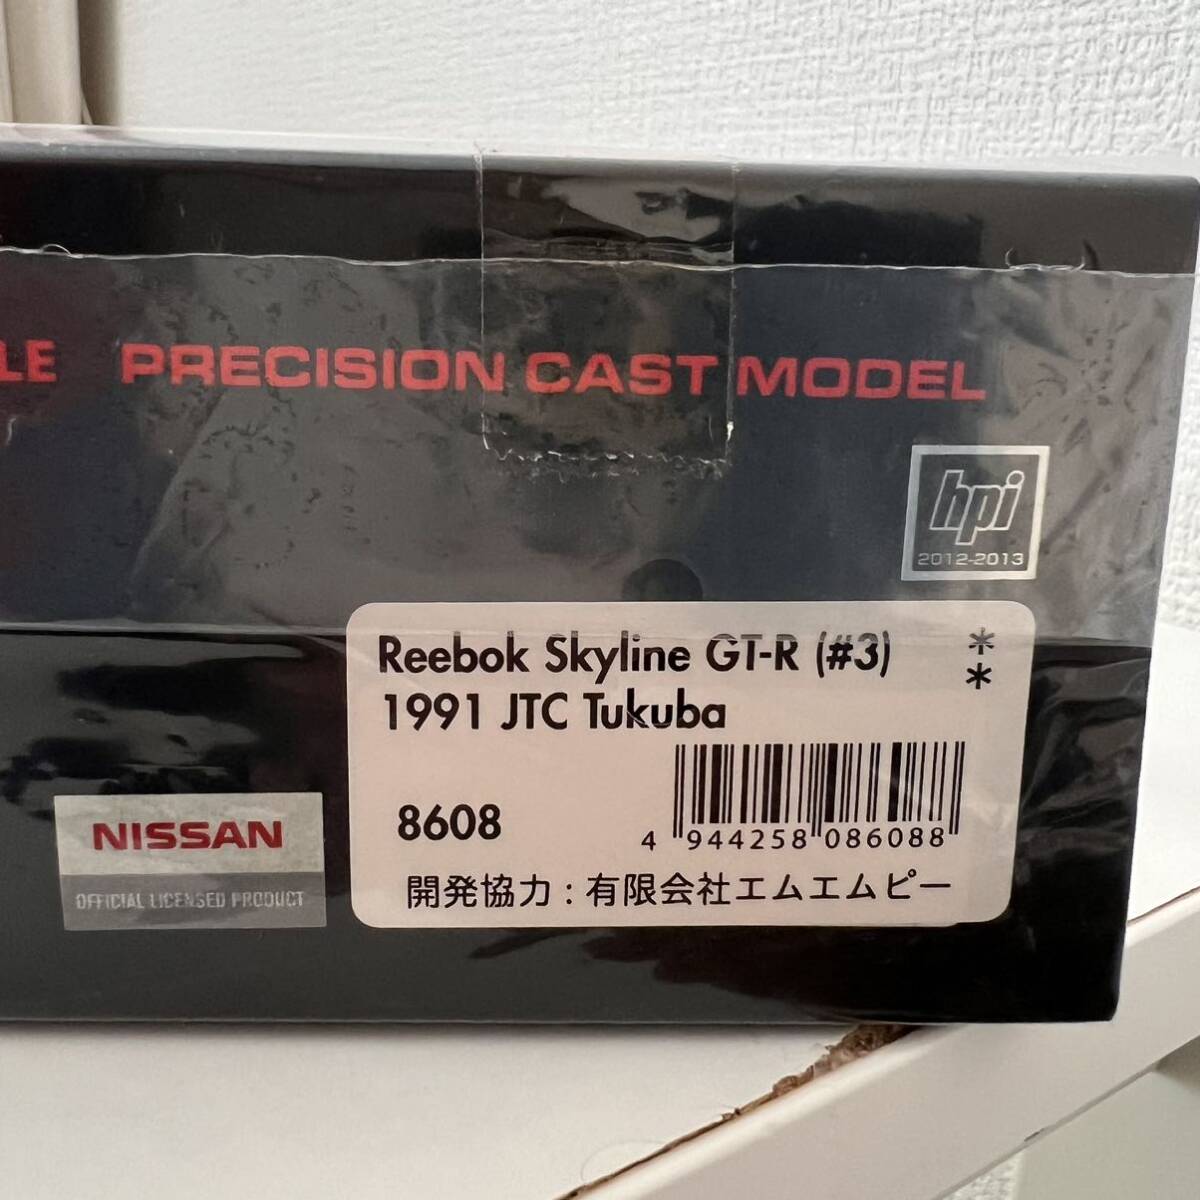  unused HPI NISSAN Reebok Skyline GT-R (#3) 1991 JTC Tukuba 8608 minicar 1/43 scale 